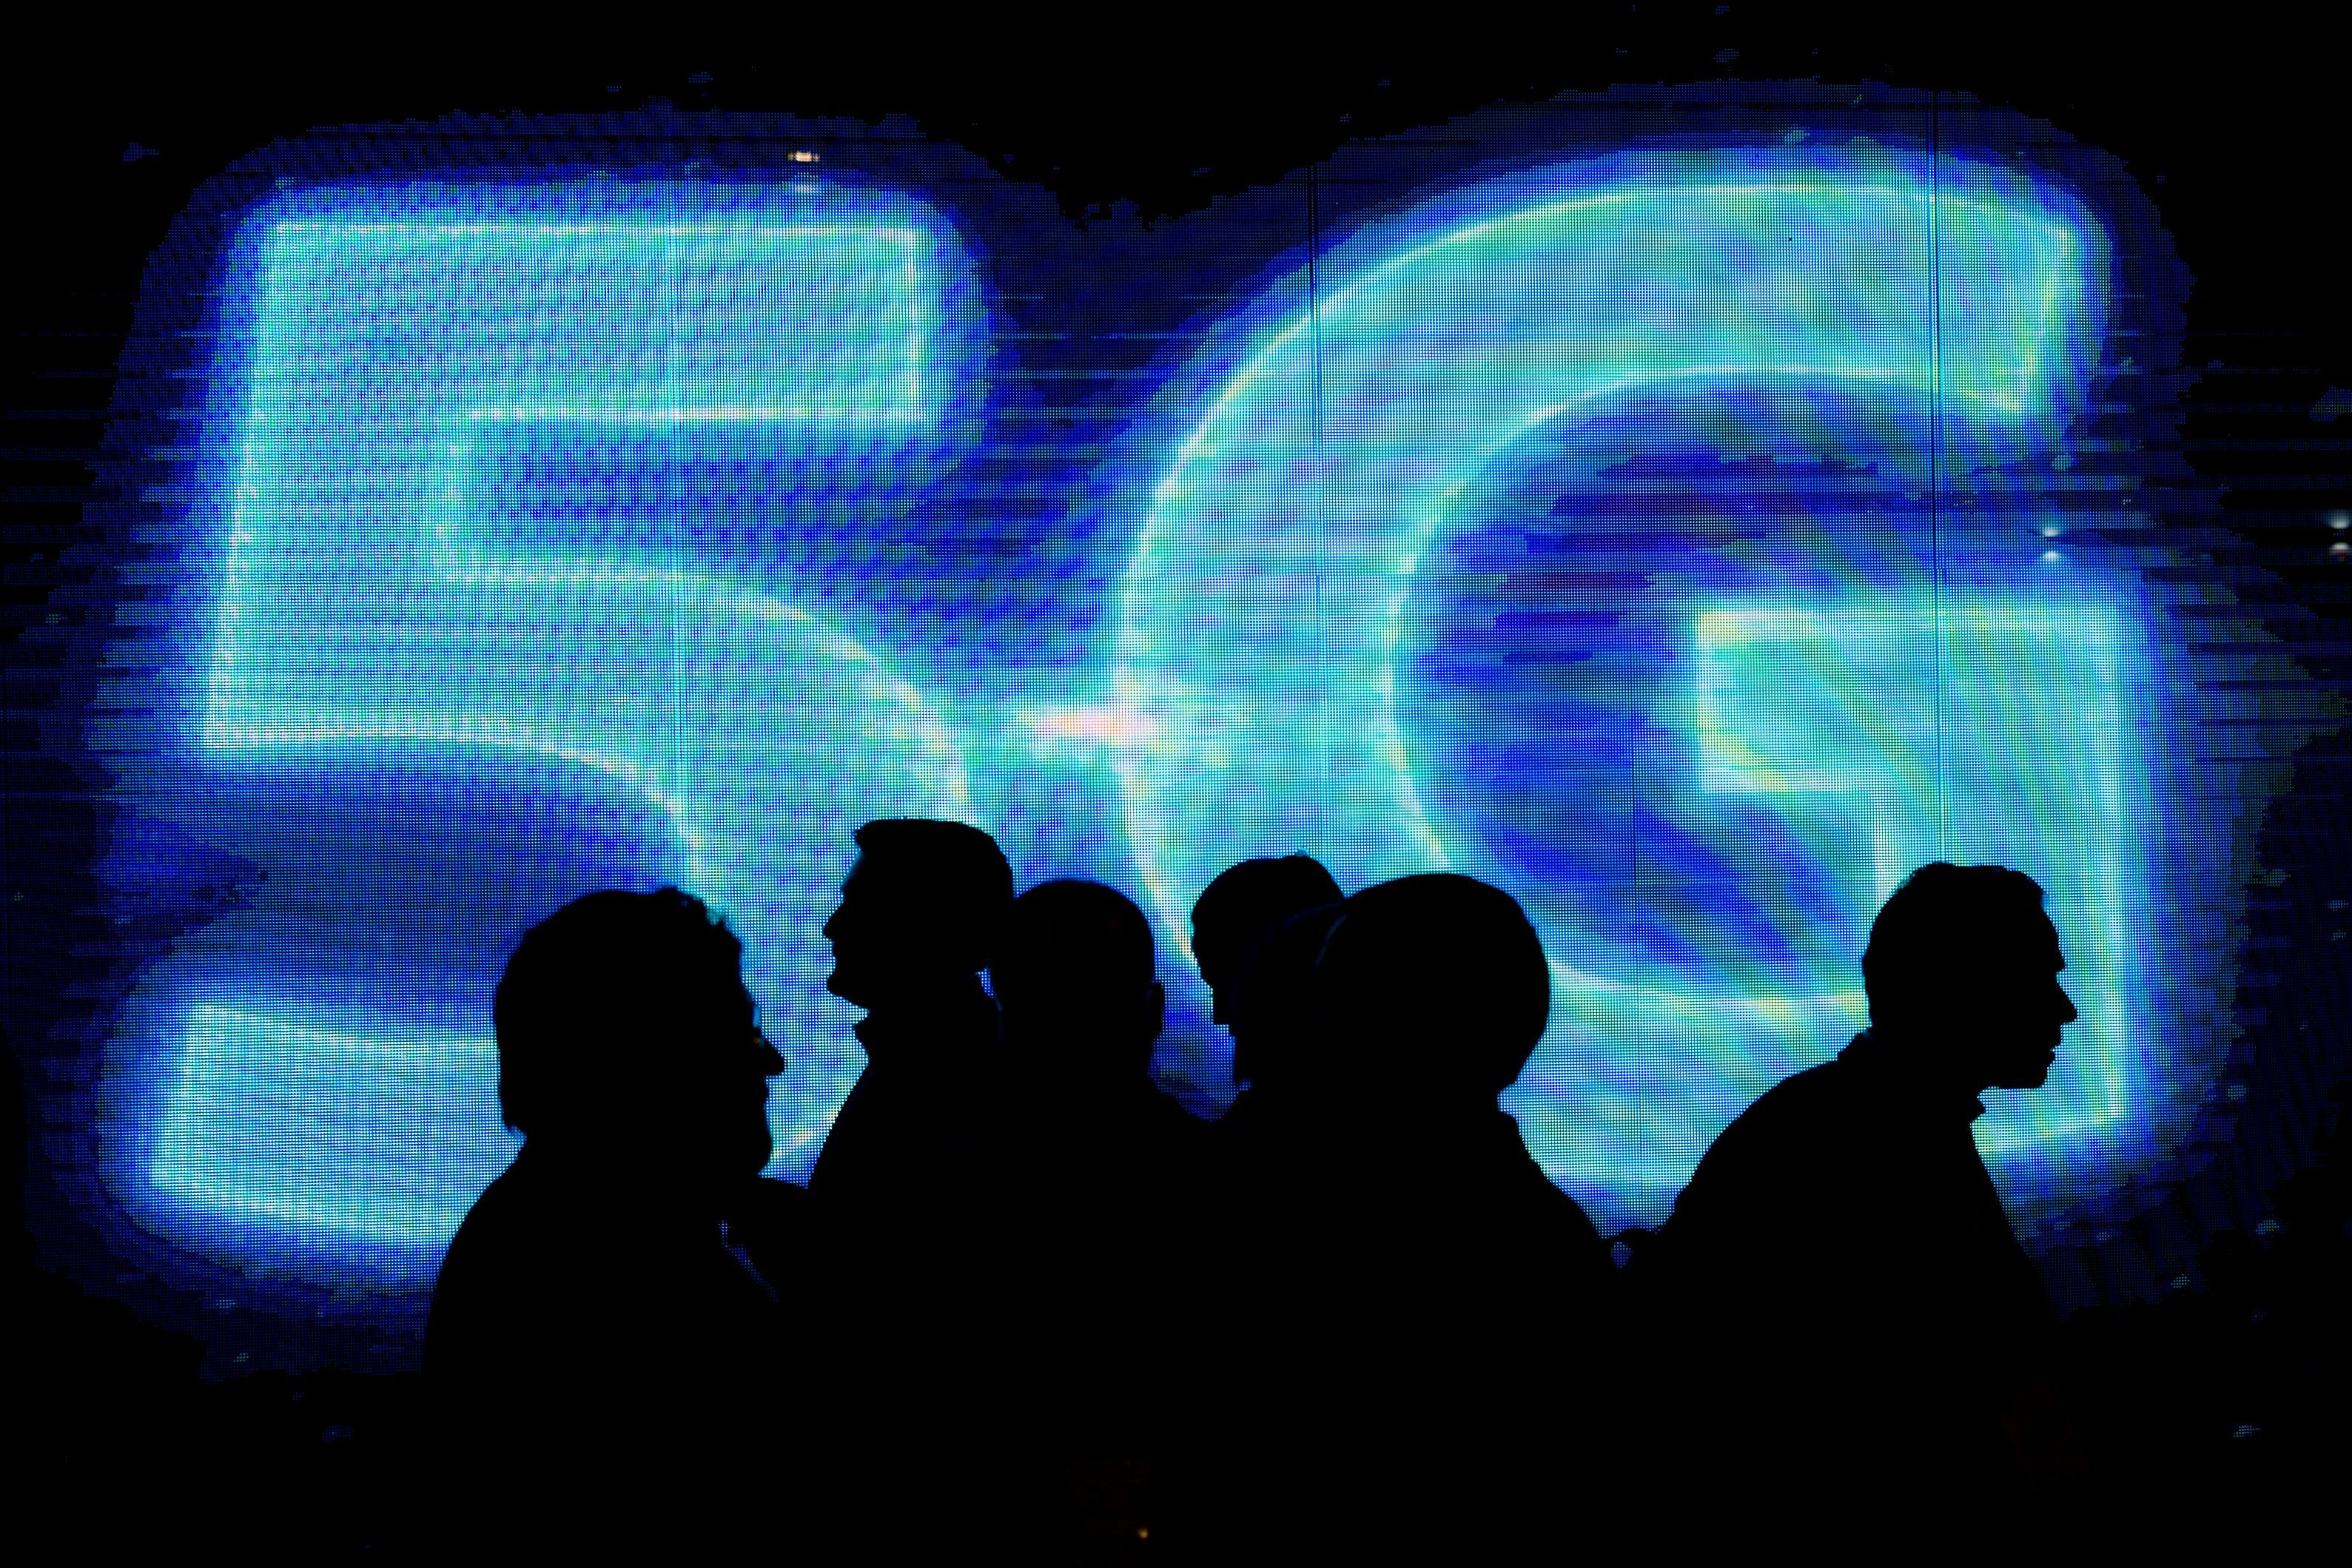  5G berjanji untuk mengubah internet seperti yang kita kenal ... tetapi apakah itu aman?